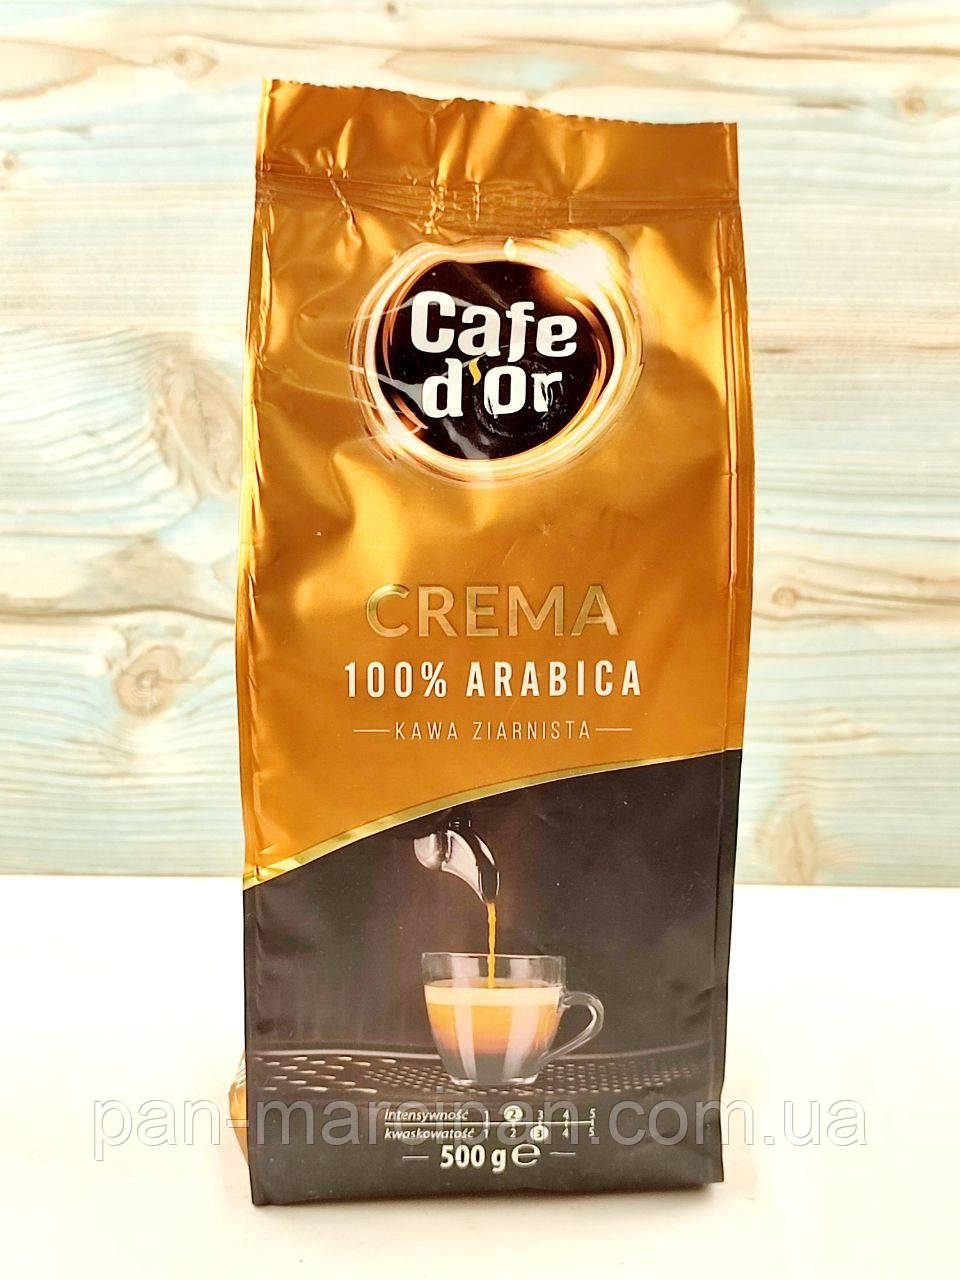 Кава зернова Cafe D'or Crema 100% arabica 500 г Польща